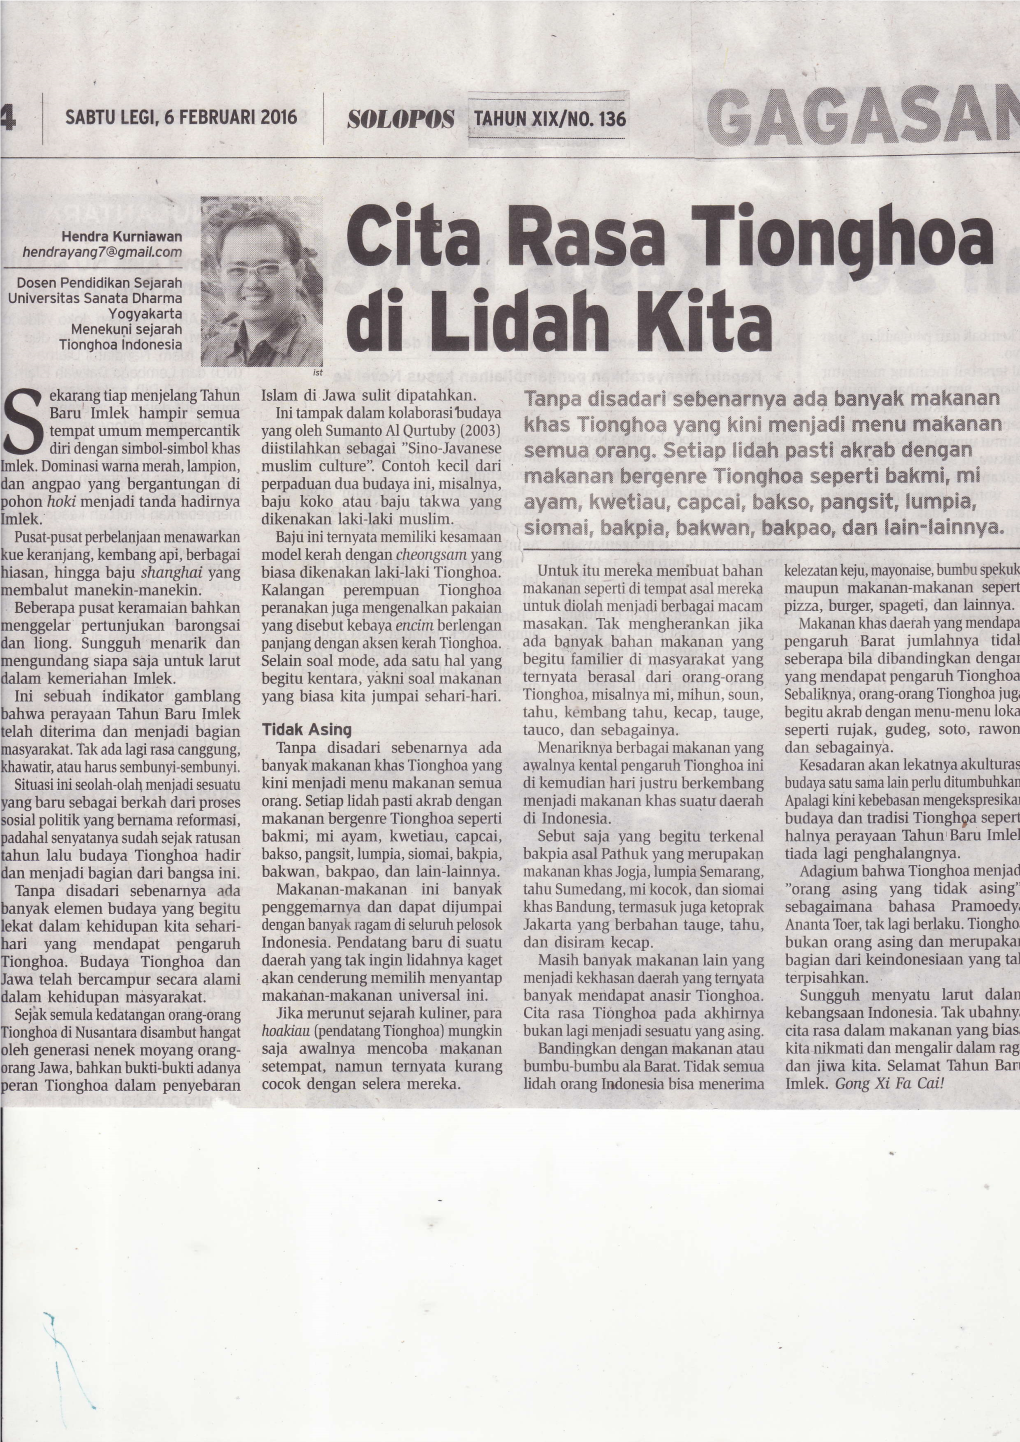 Cita Rasa Tionghoa Pada Akhirnya Kebangsaanindonesia